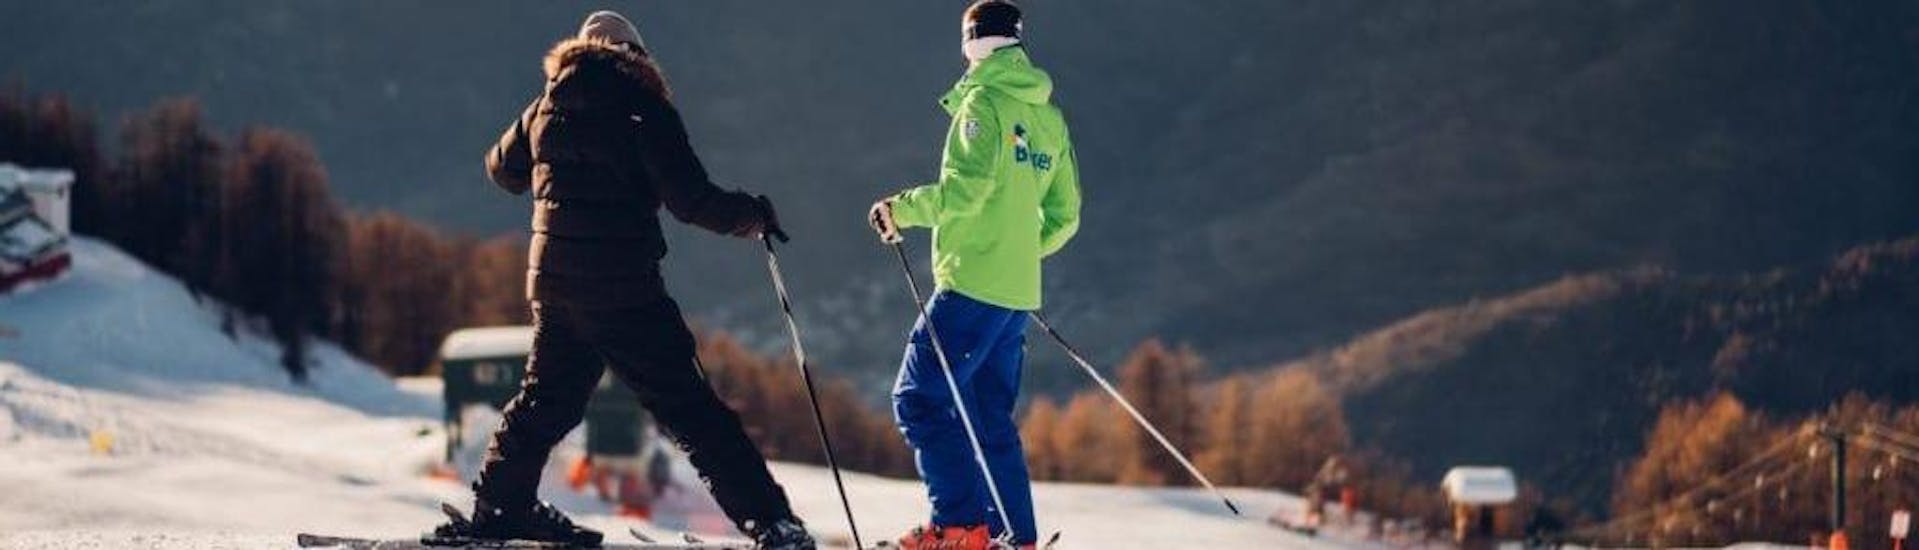 Clases de esquí privadas para adultos a partir de 16 años para todos los niveles.